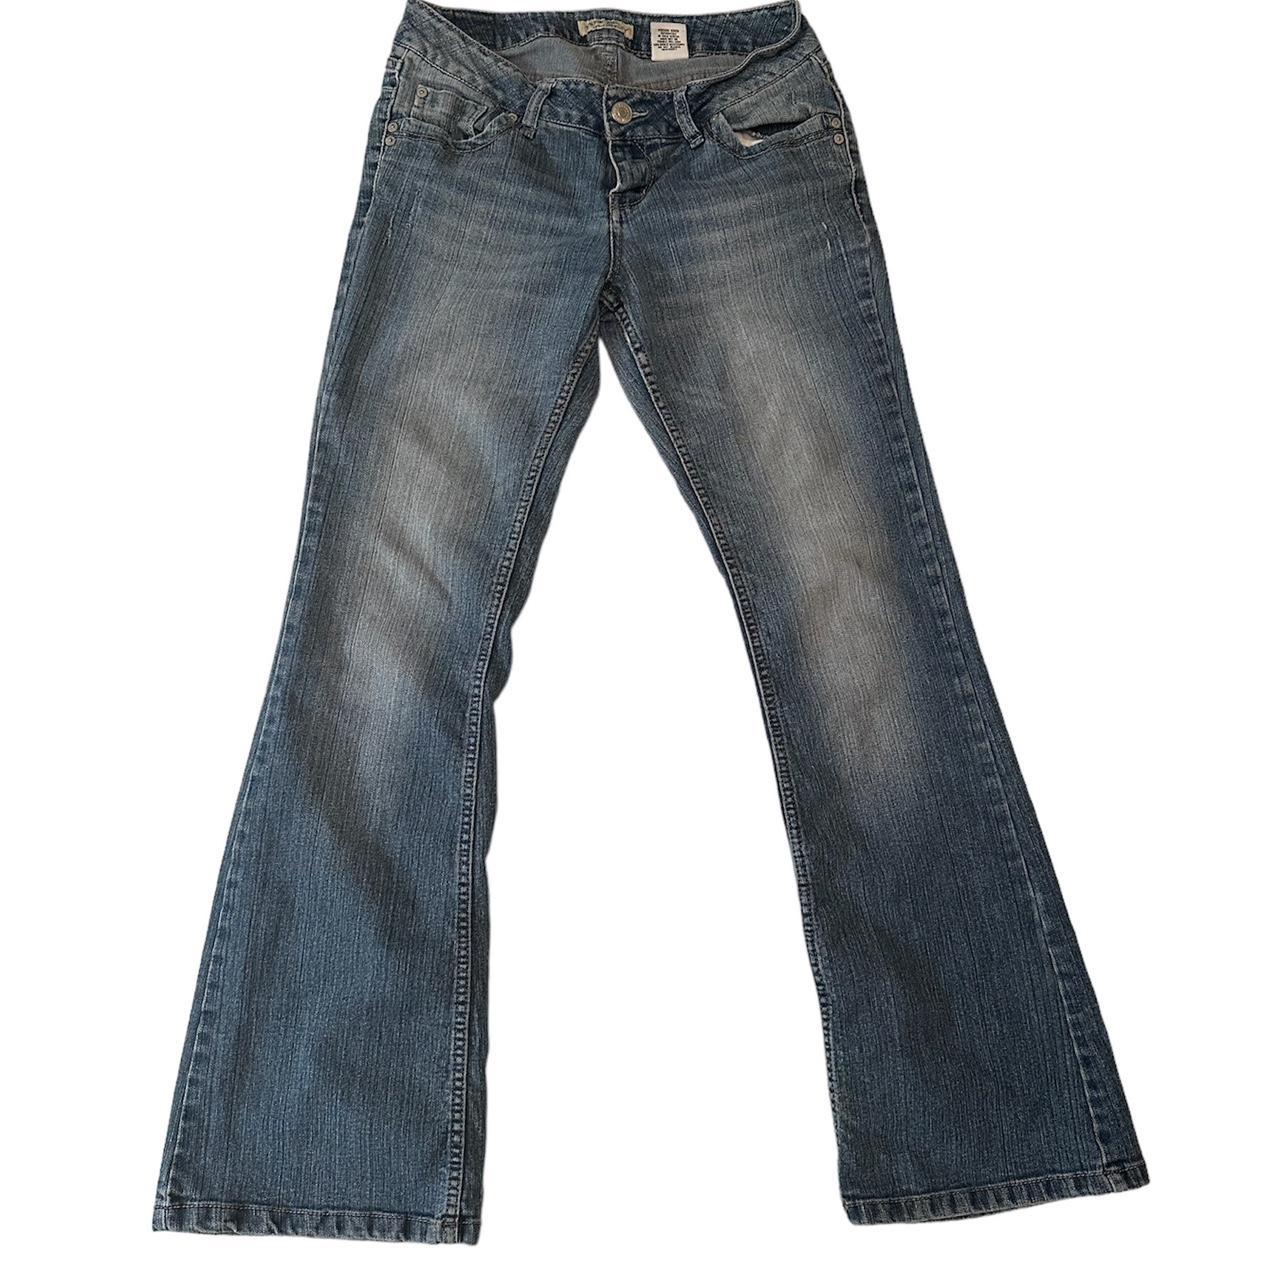 superrr cute vintage y2k paris blues jeans low... - Depop